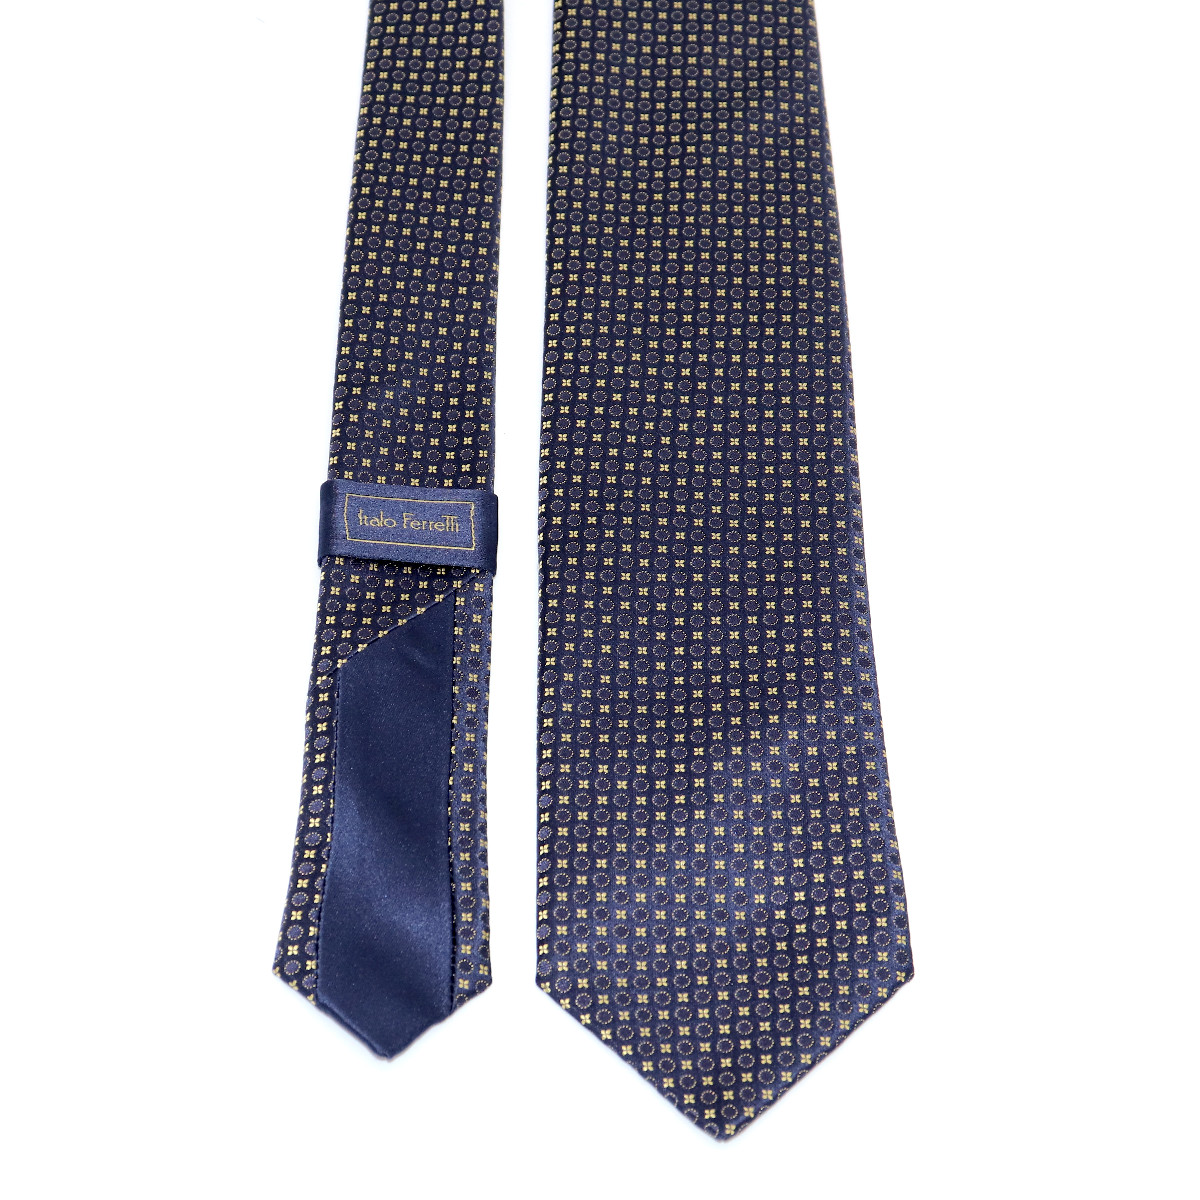 Luxury silk necktie, navy blue background and yellow micropattern ...